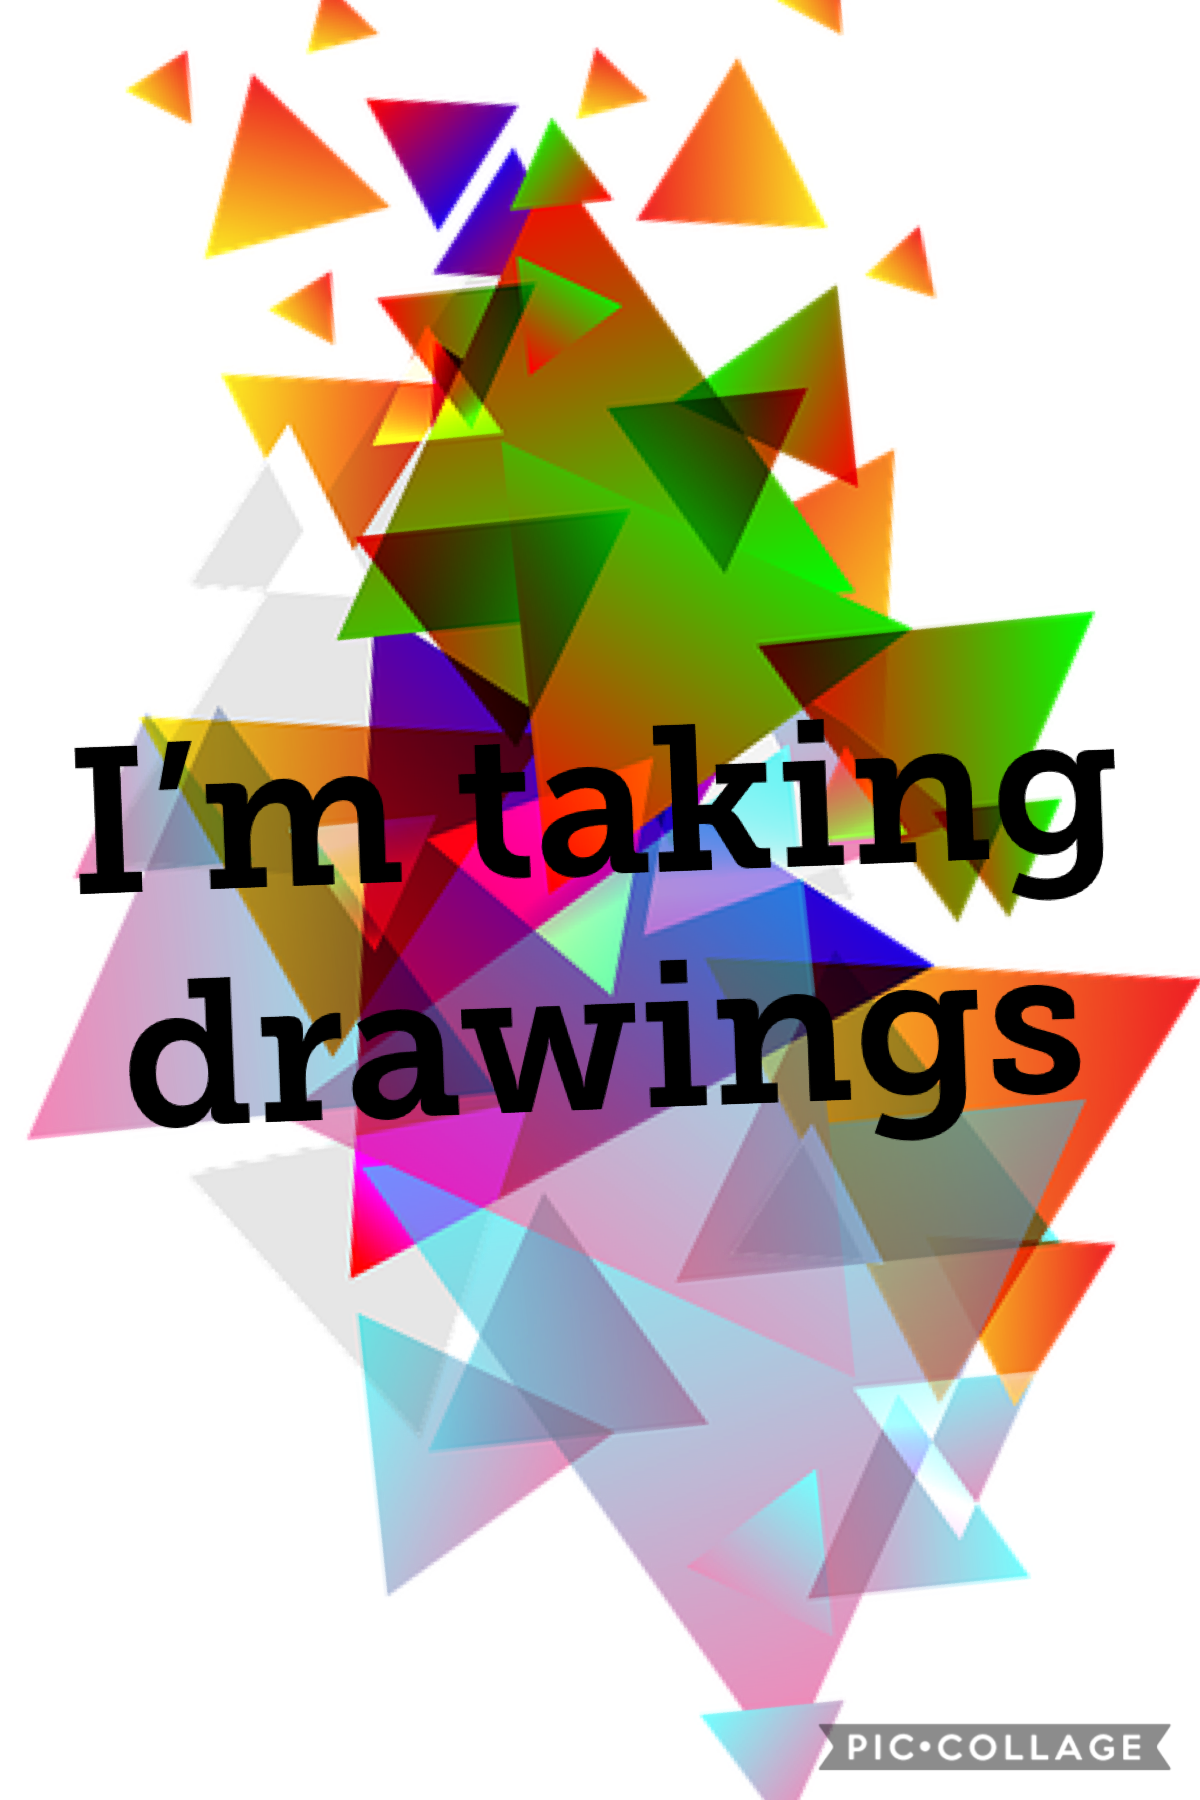 I’m taking drawings
